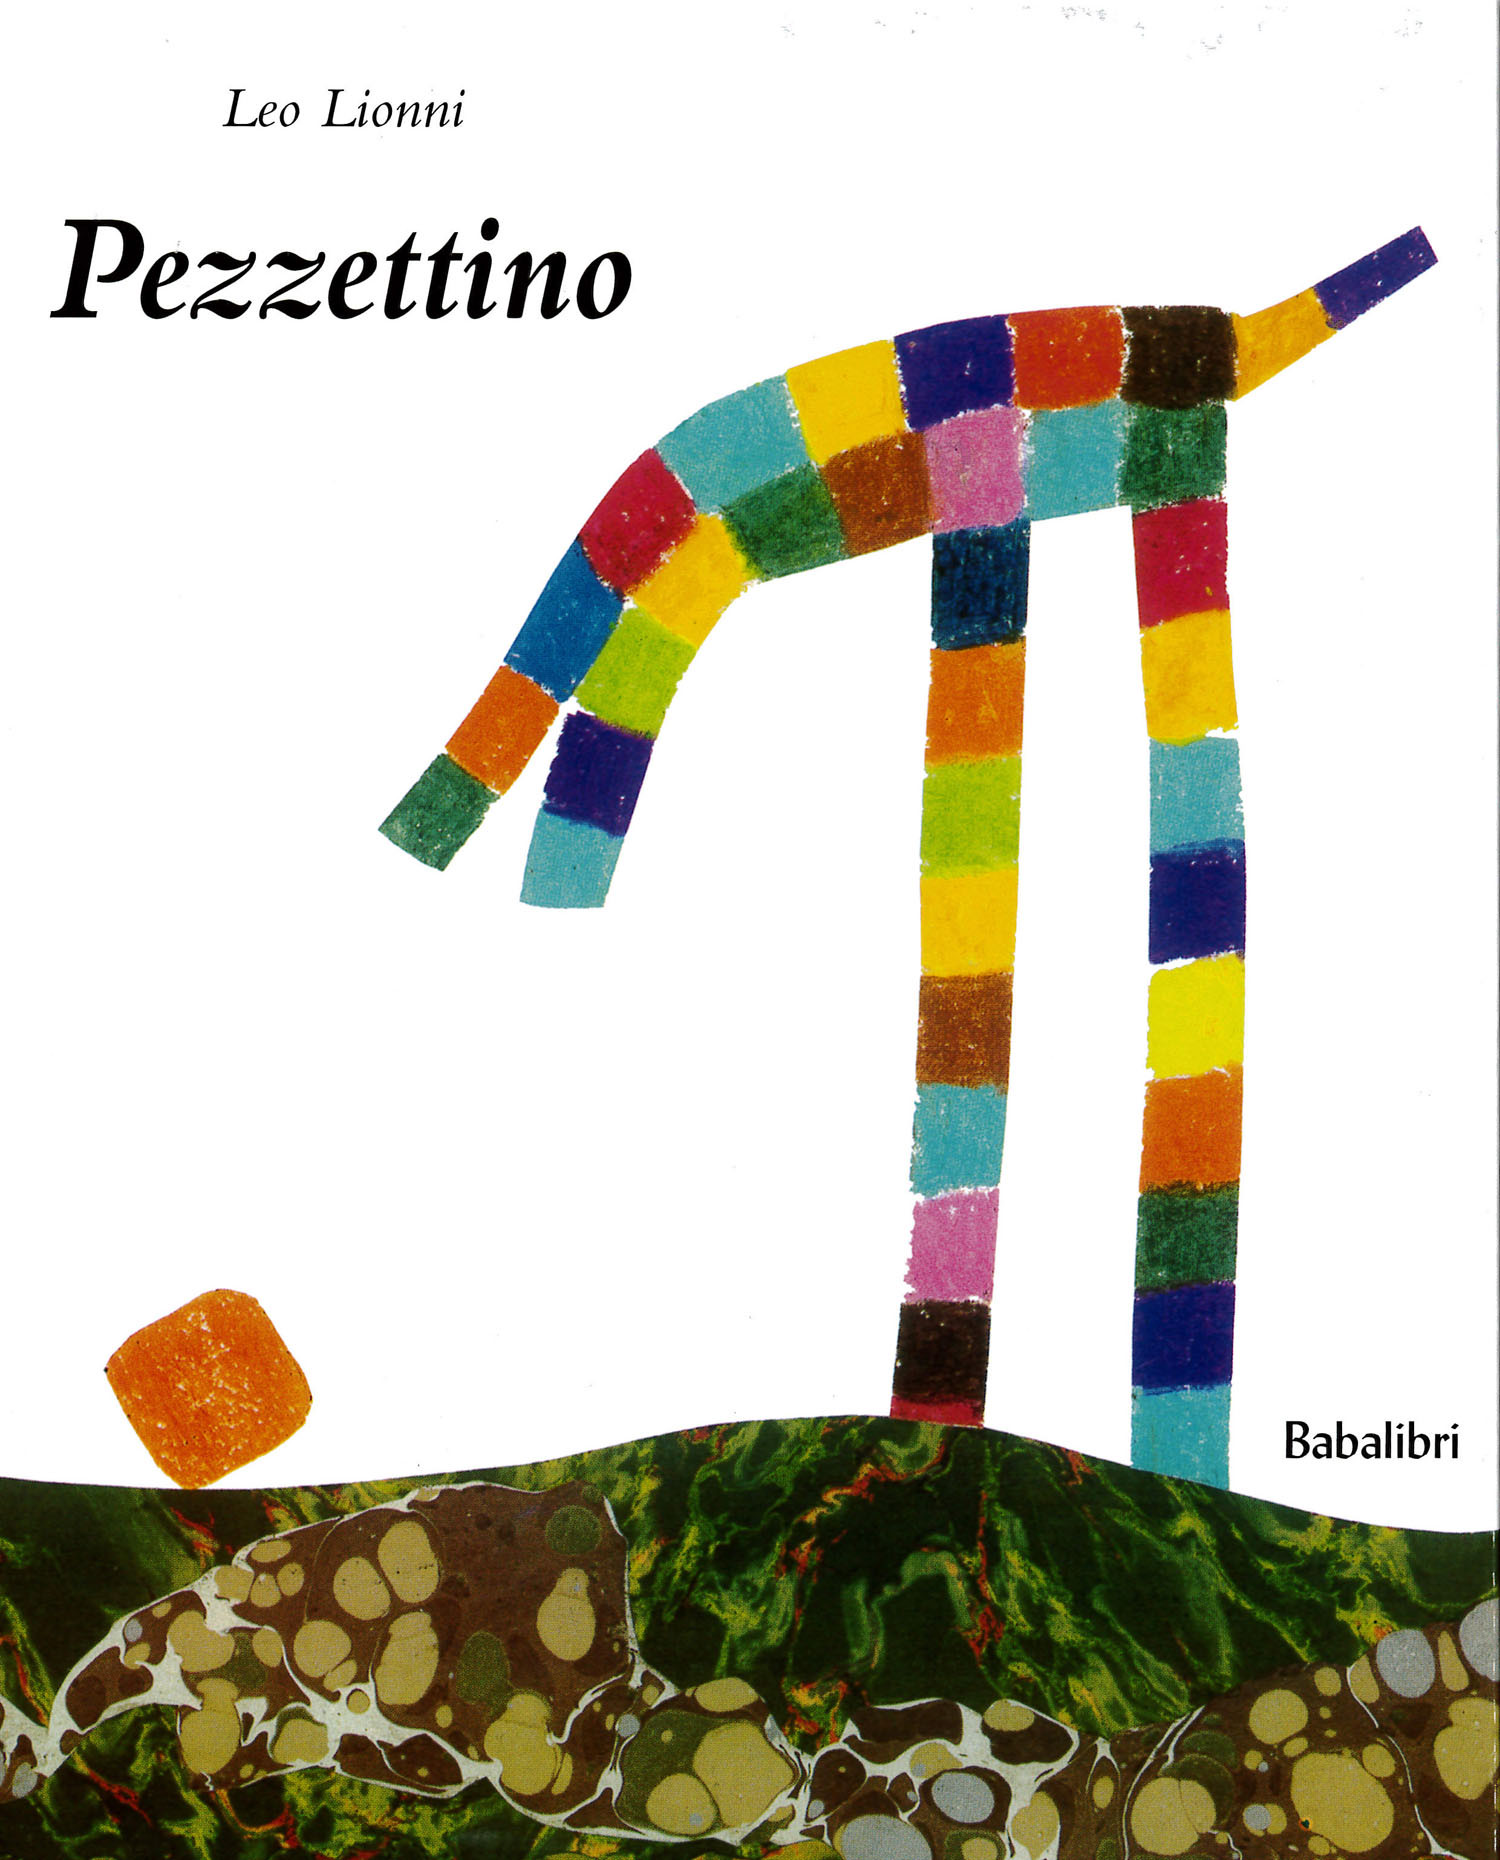 御購入のお礼 Pezzettino イタリア 絵本 Cerbiatto チェルビアット 絵本店